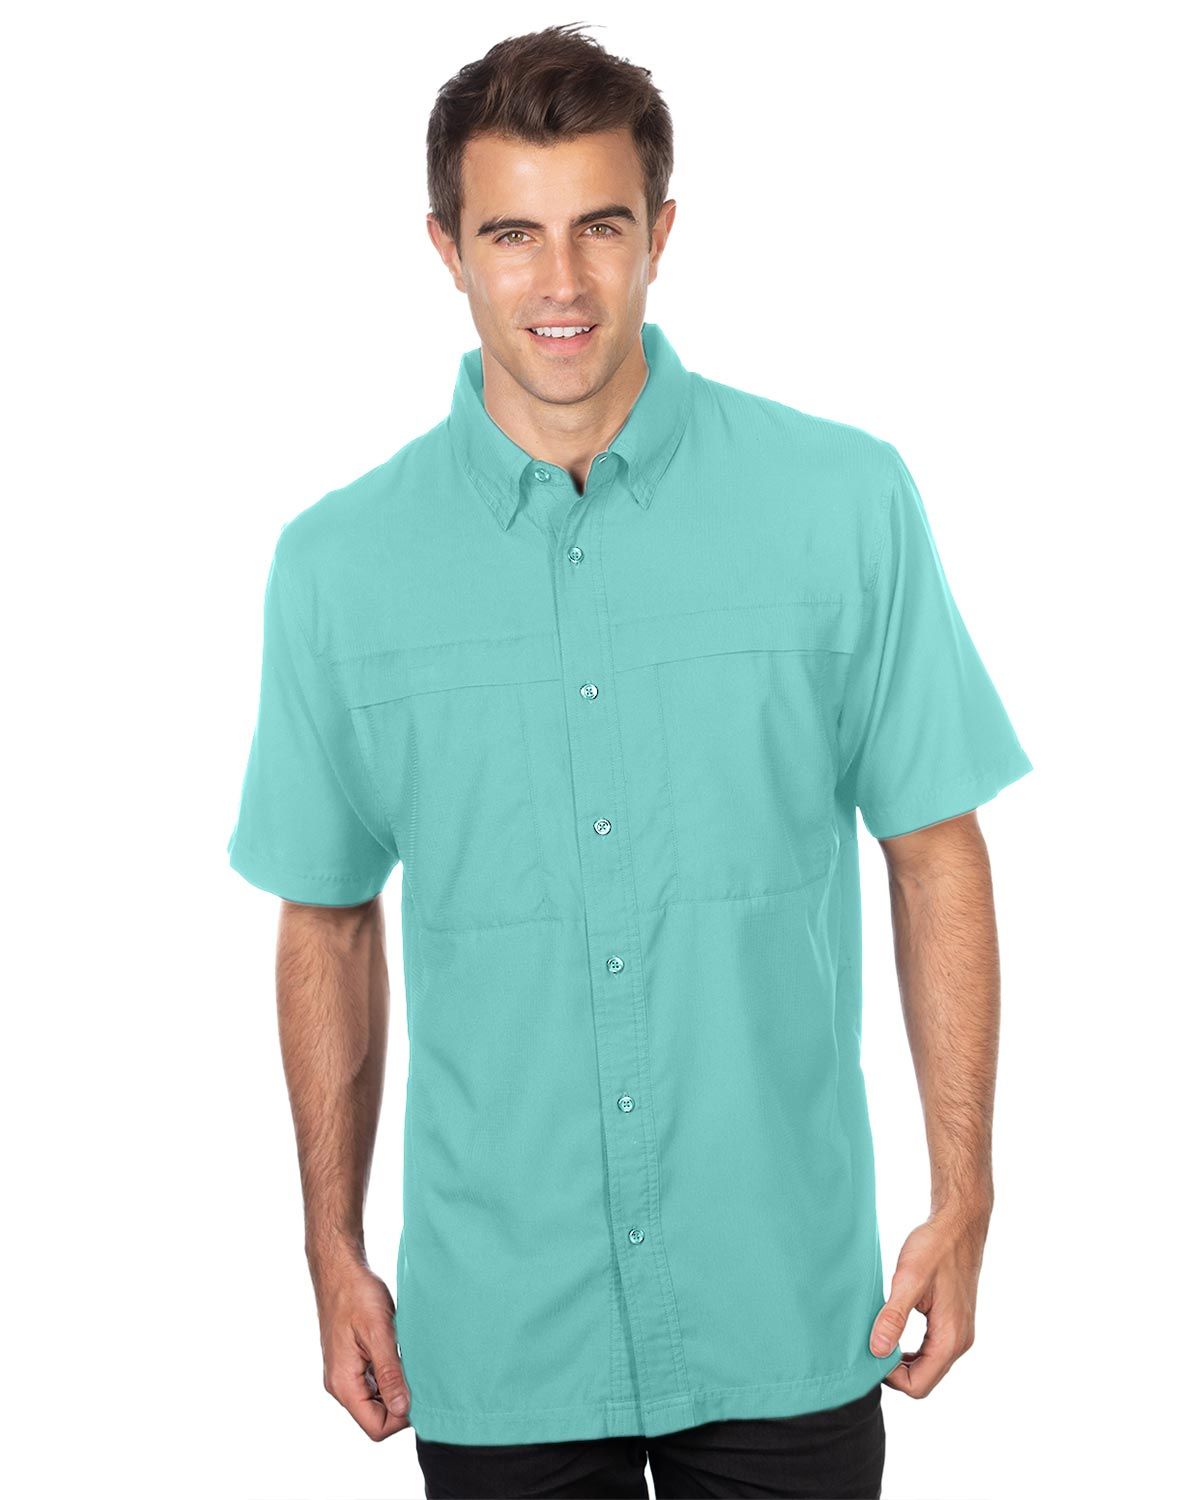 Tri-Mountain W704 Men's Short Sleeve Fishing Shirt